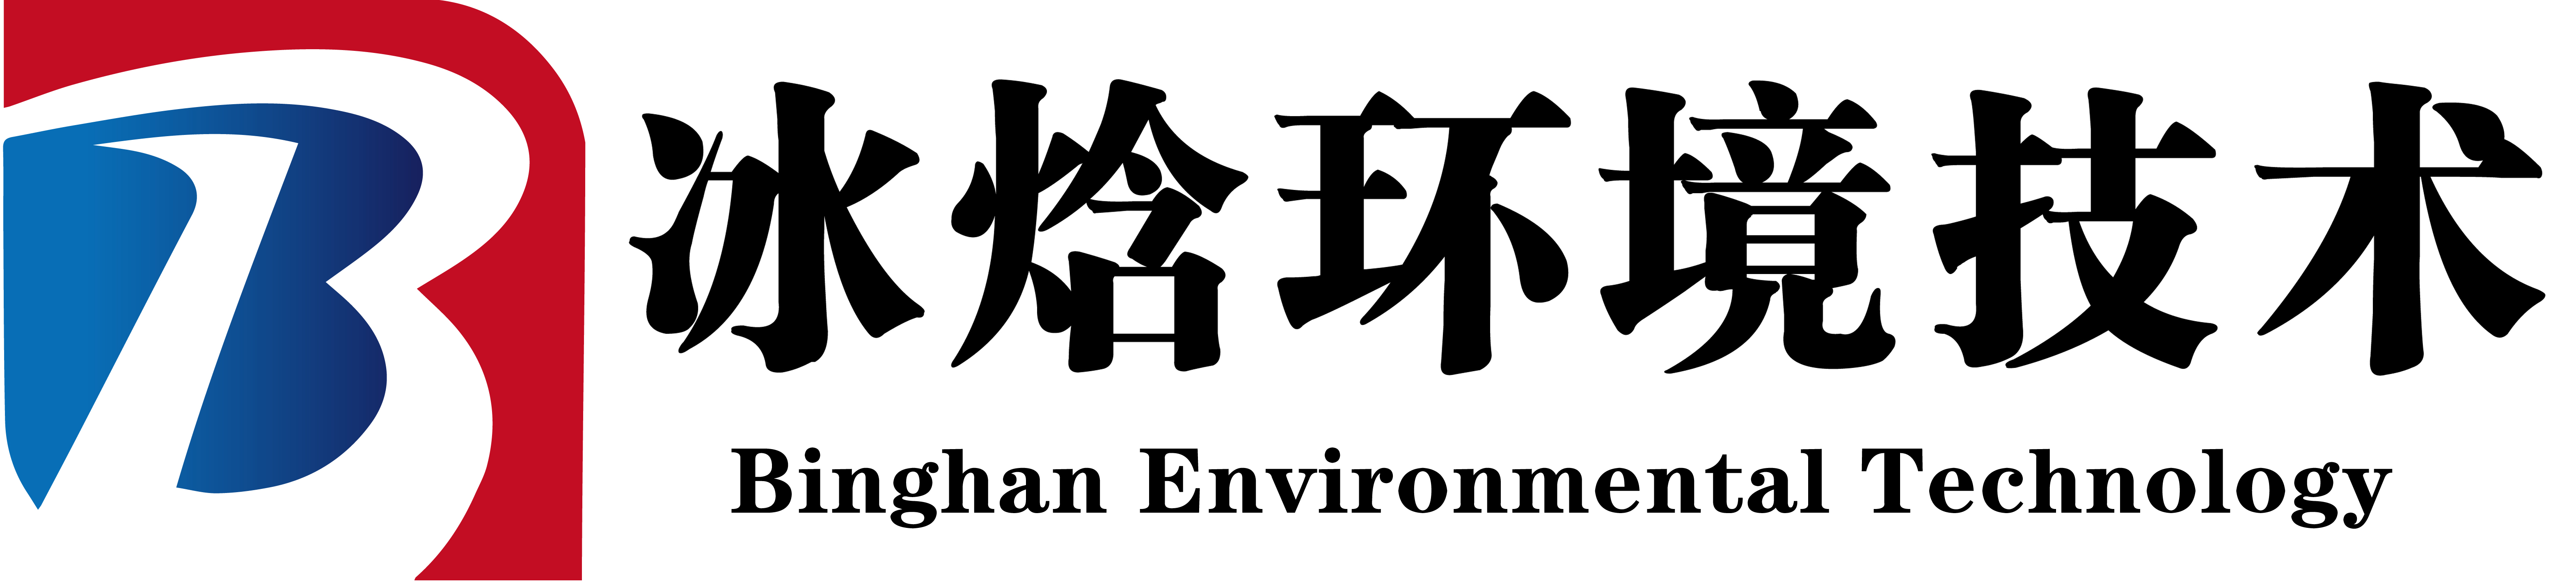 上海冰焓环境技术有限公司